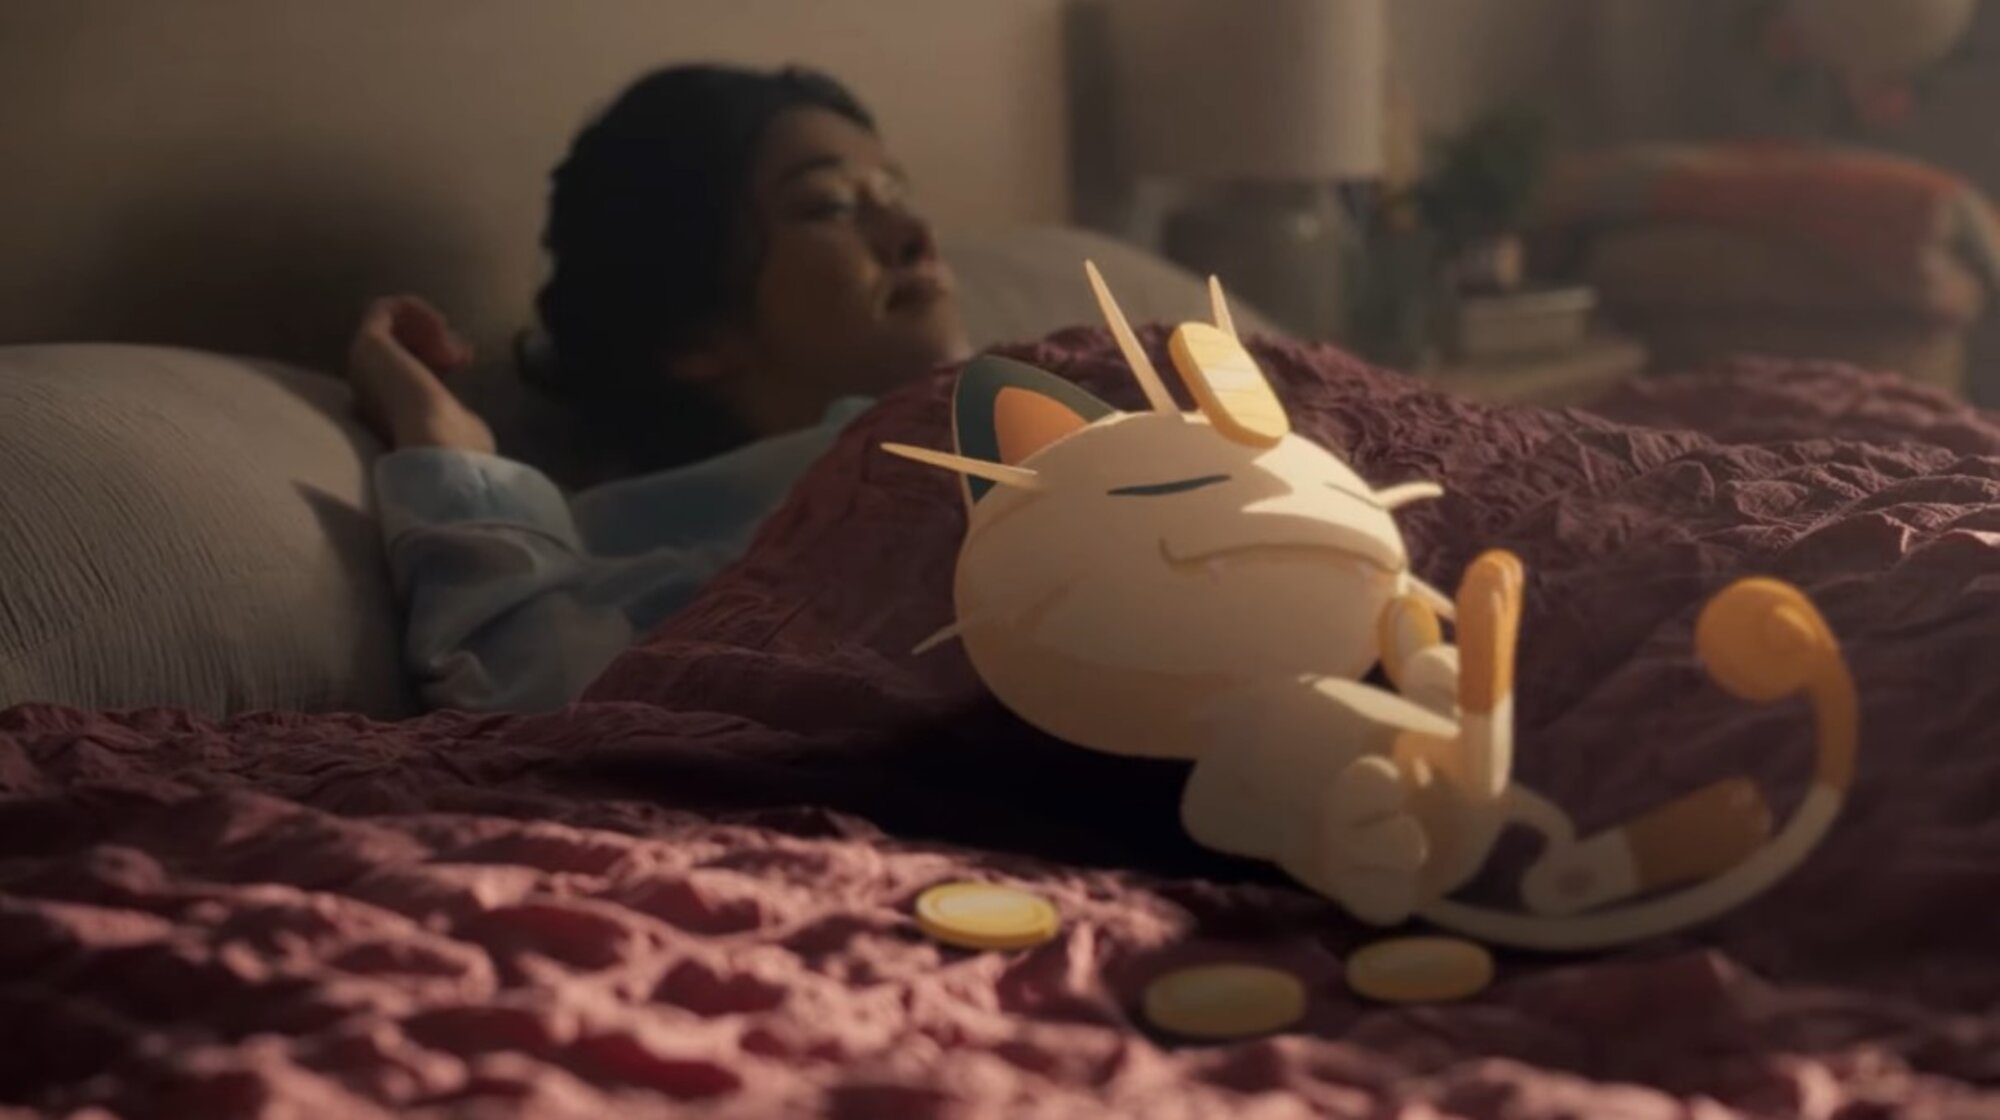 Vous ne pouvez jouer à ce jeu Pokémon qu'en dormant